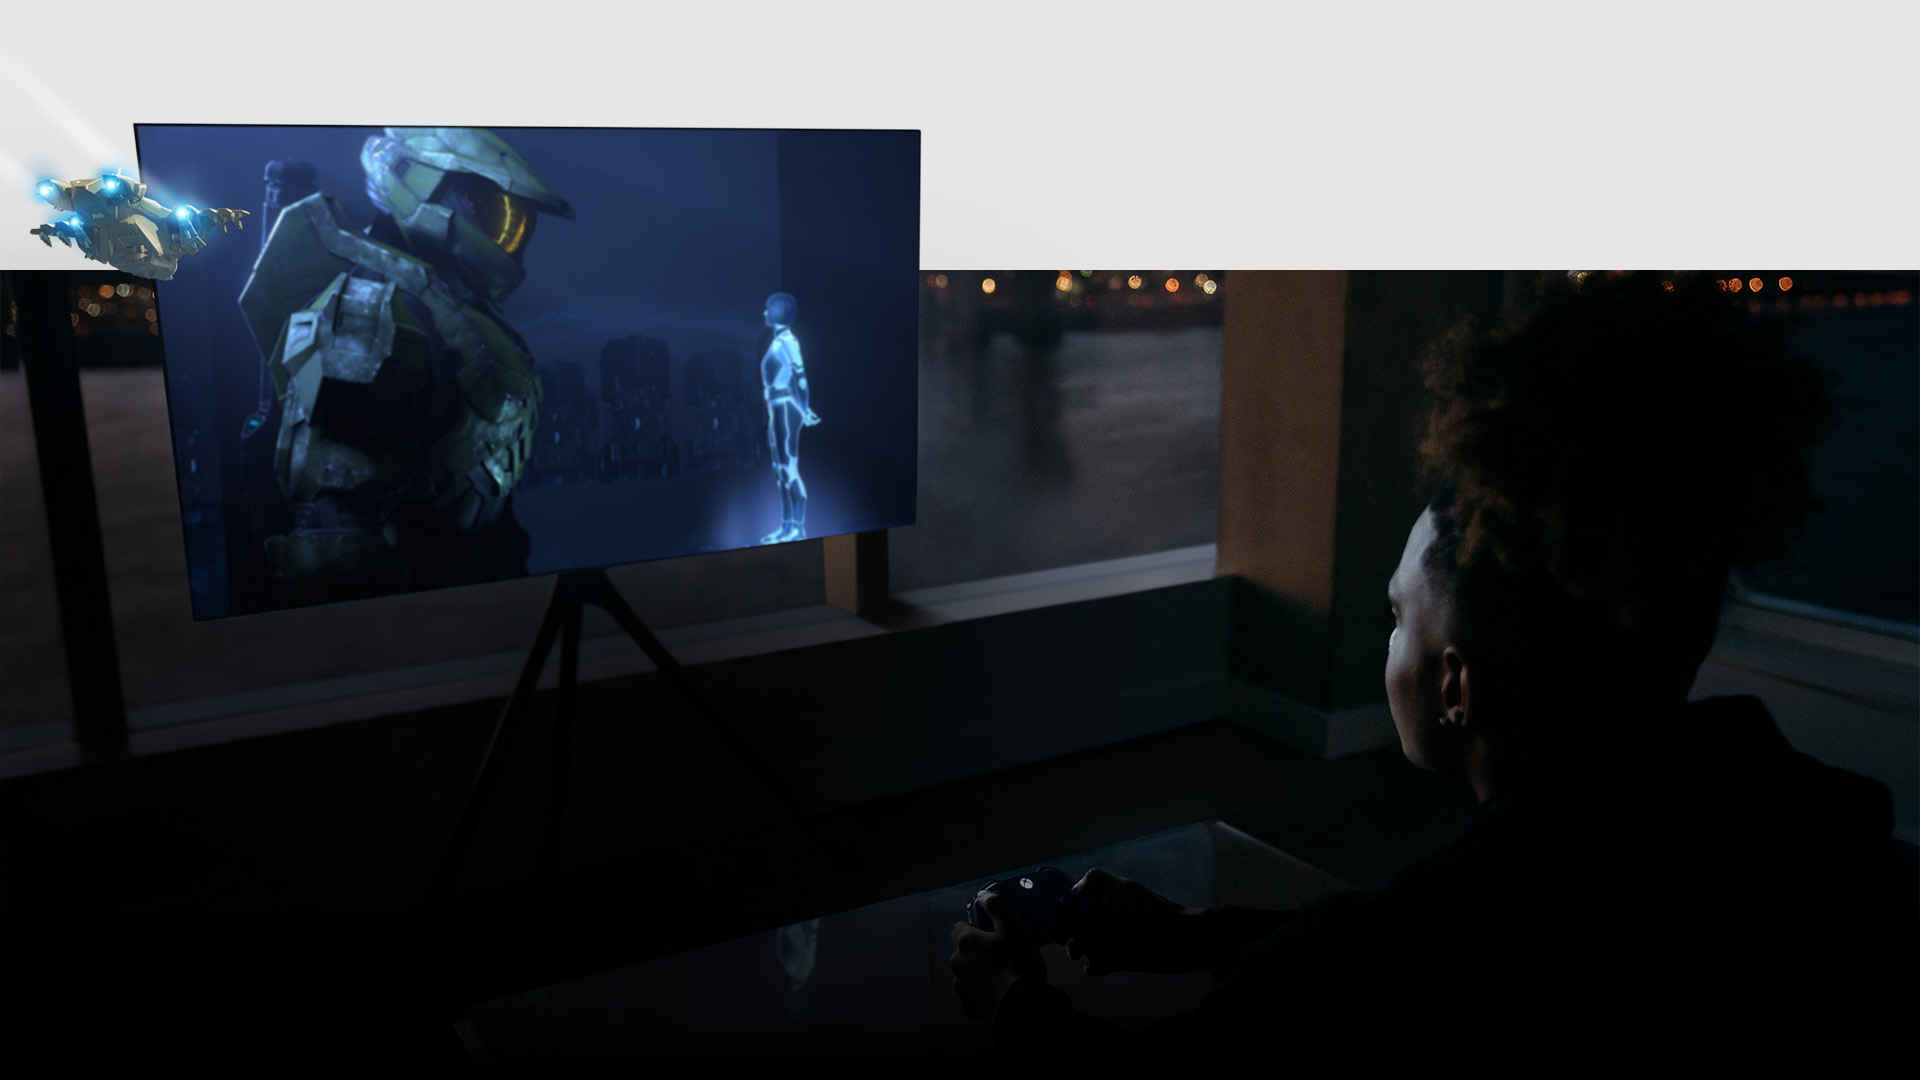 Gracz używa kontrolera w salonie, podczas gdy gra Halo Infinite rozgrywa się na telewizorze Samsung